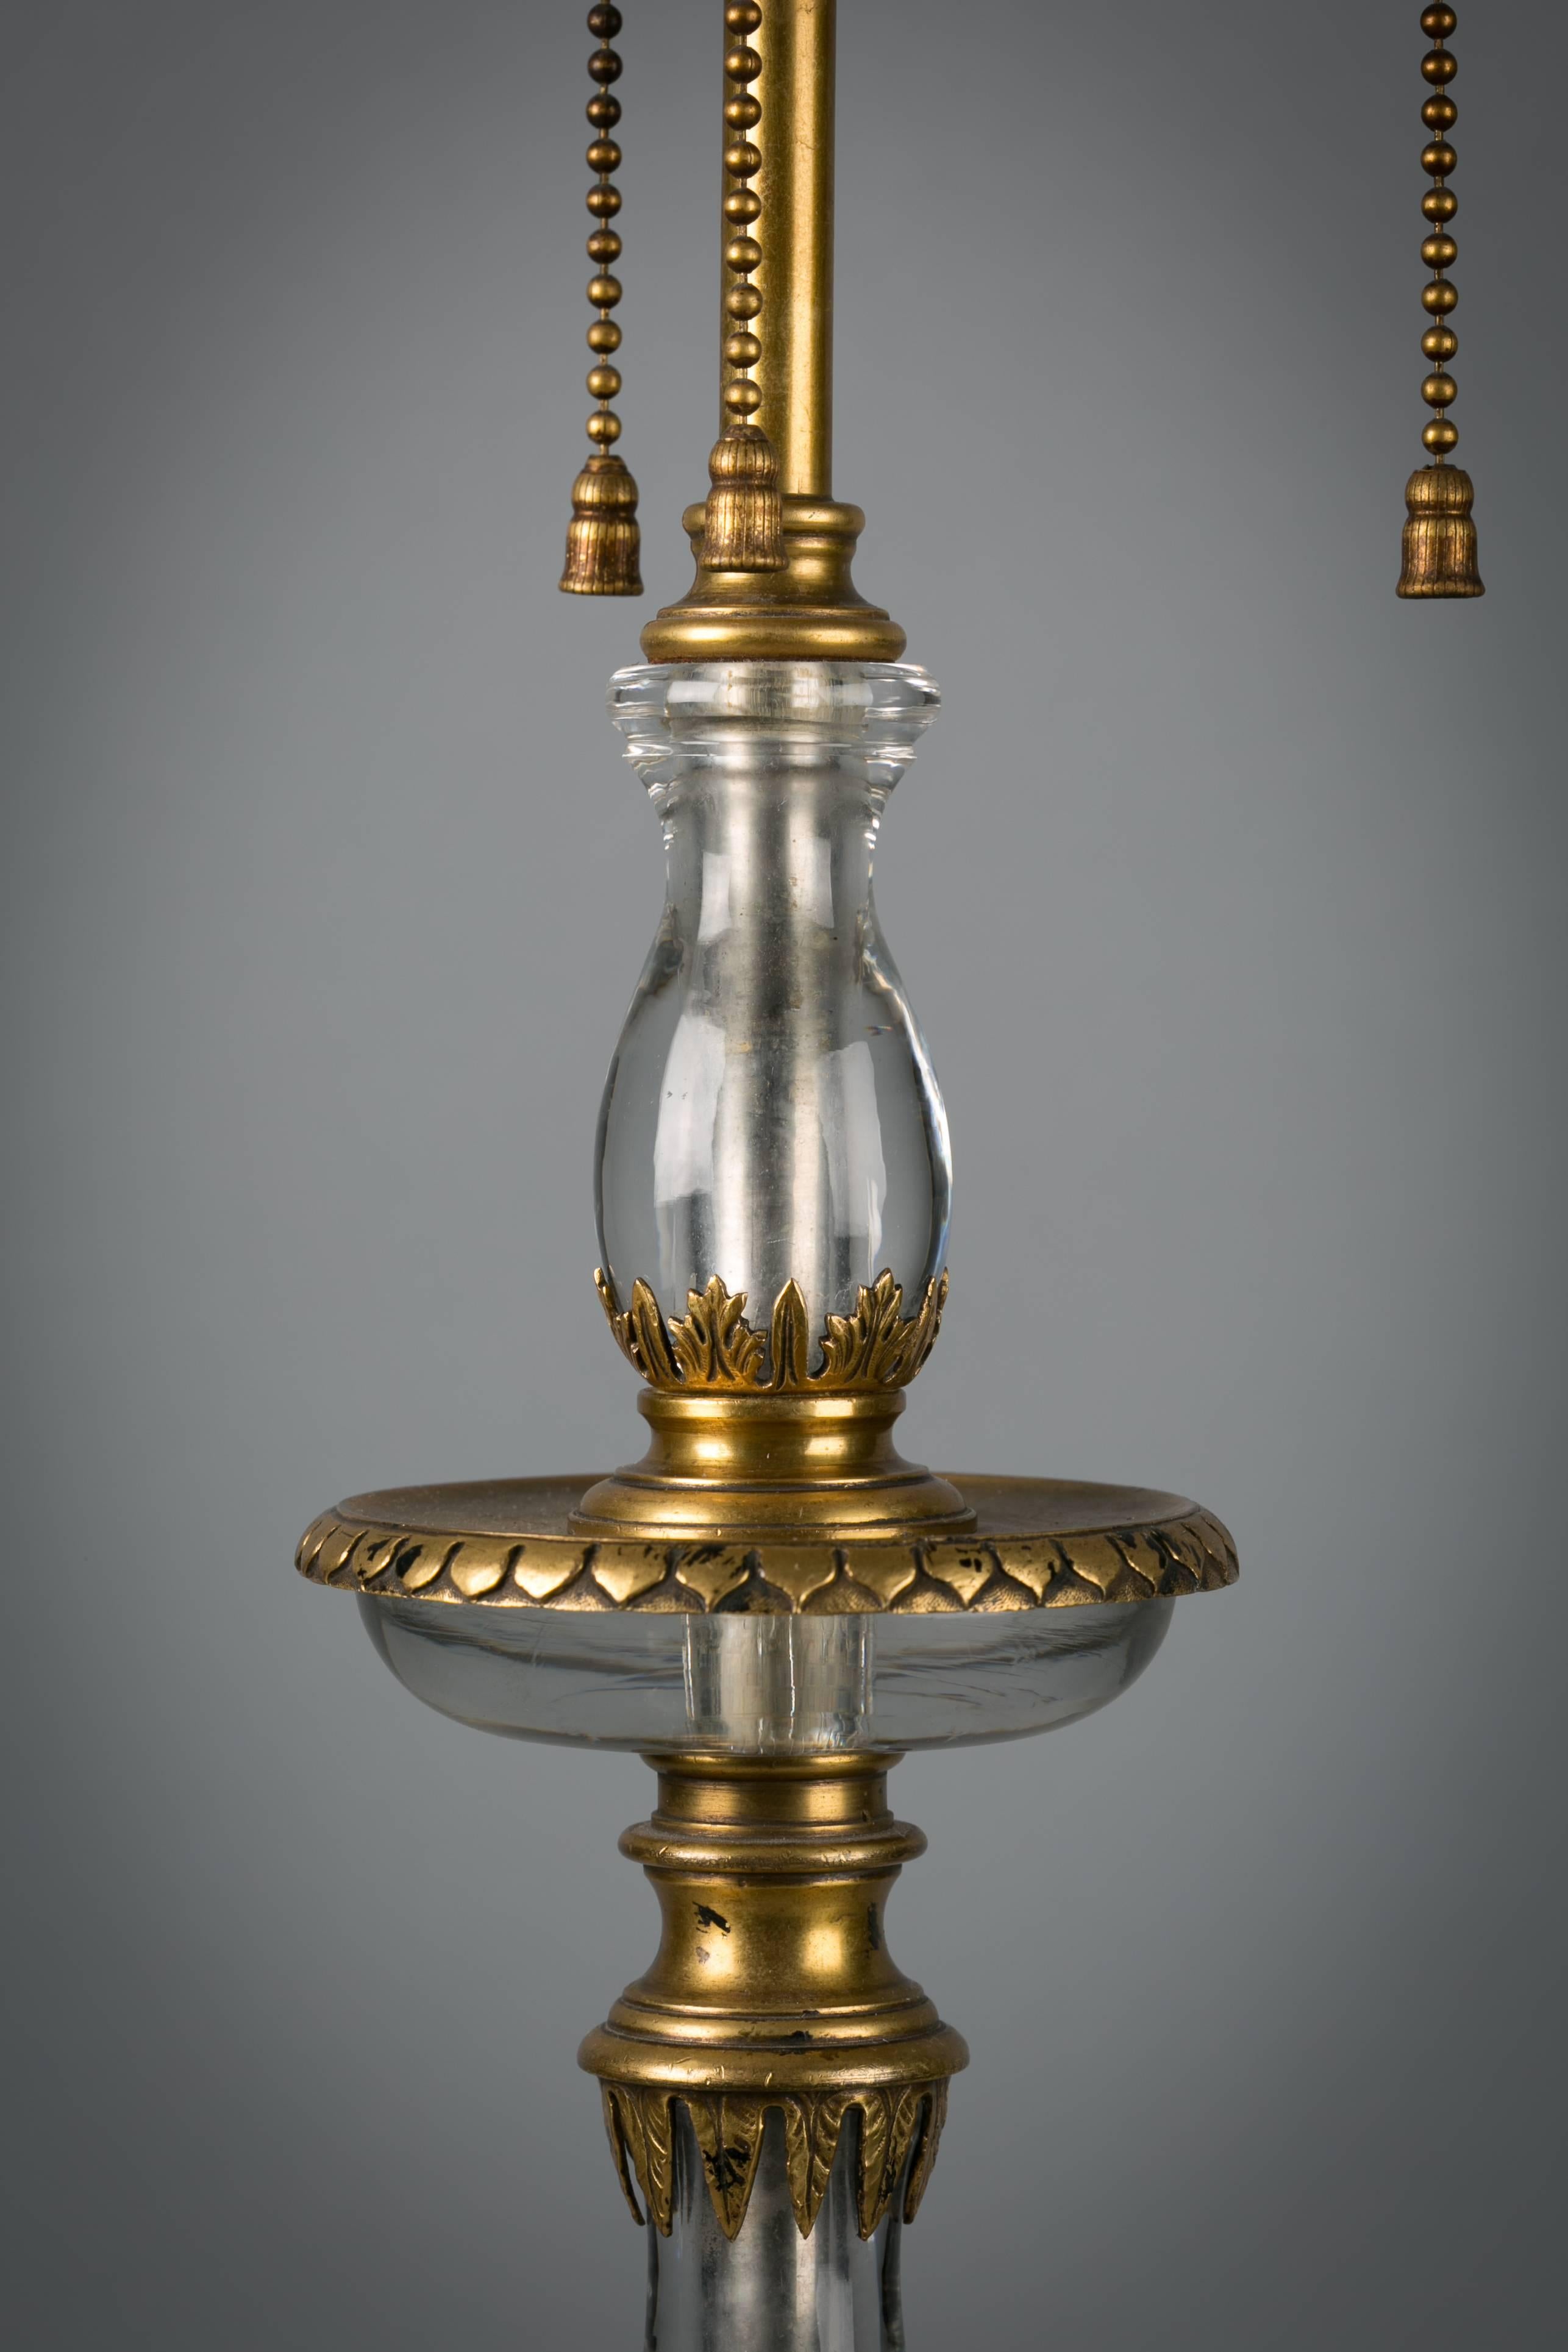 Lampe américaine en bronze et cristal de roche, vers 1900. Réalisé par E.F. Caldwell & Co.